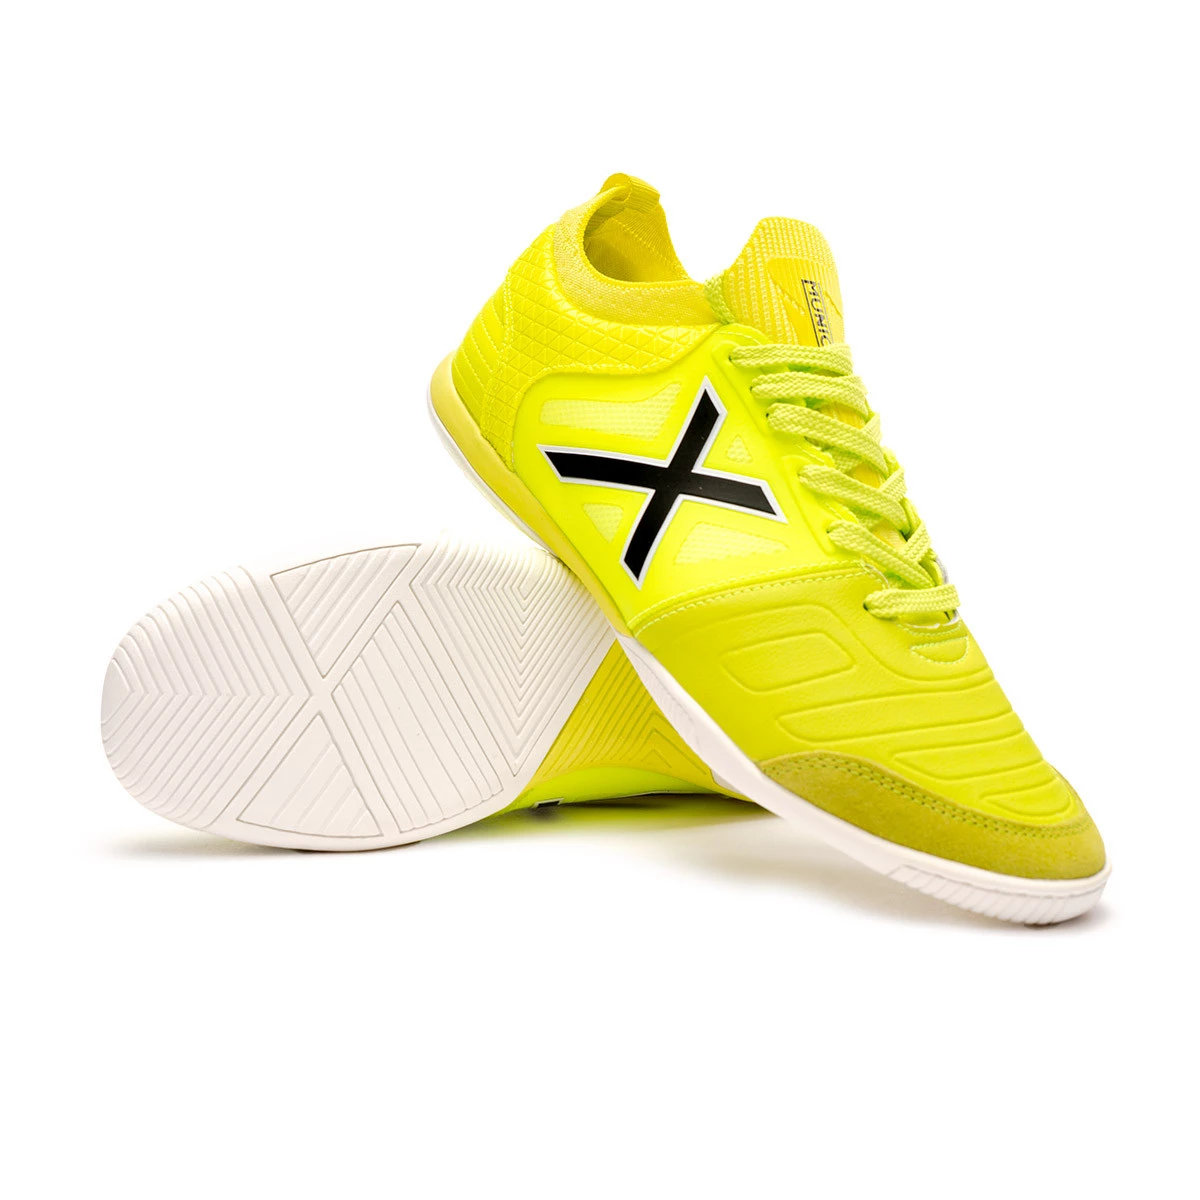 Munich Gresca 307 Yellow White Futsal Shoes - Men's Indoor Soccer Footwear